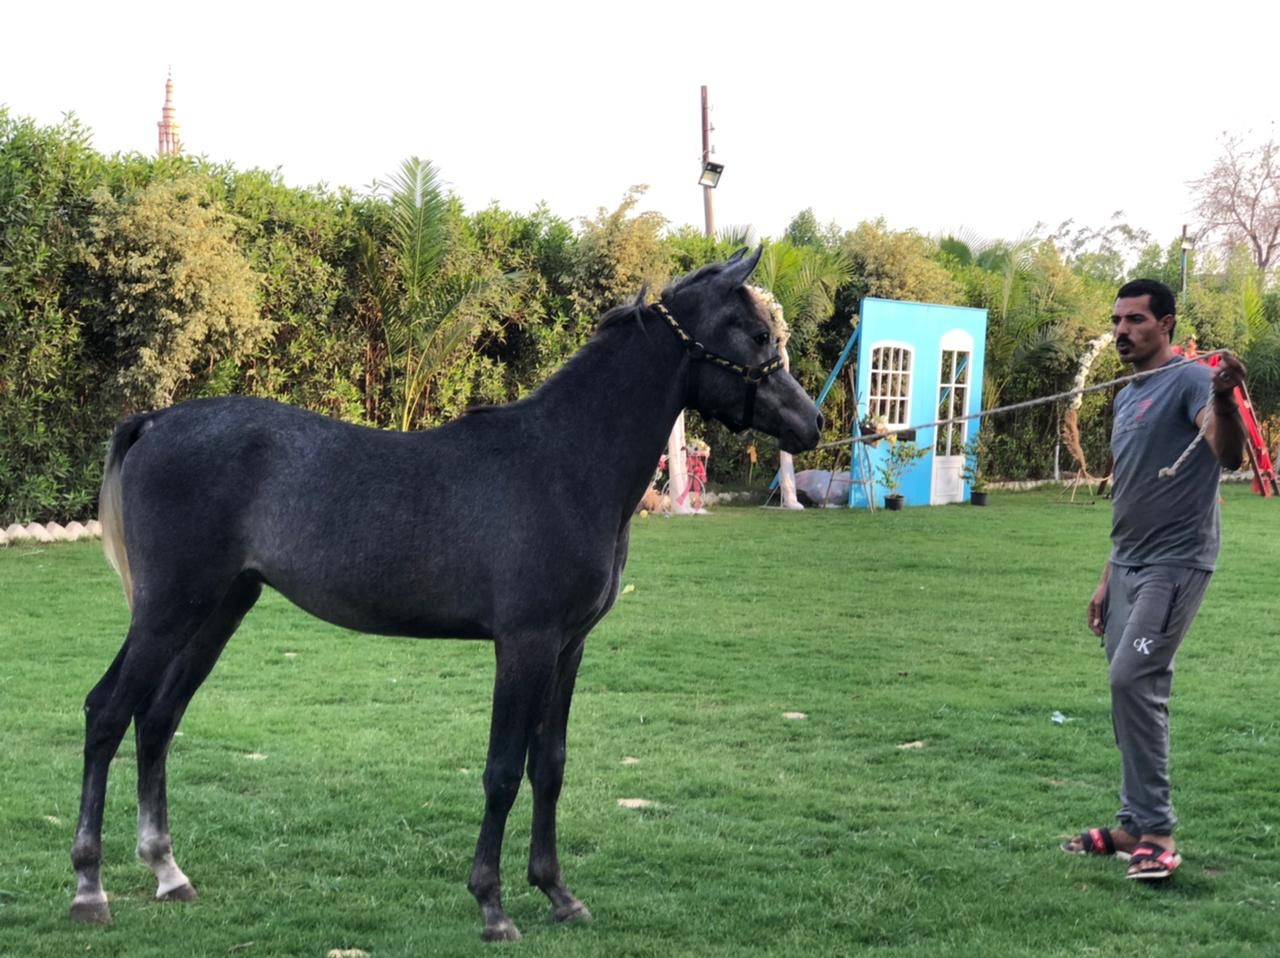 تربية الخيول العربية الأصيلة